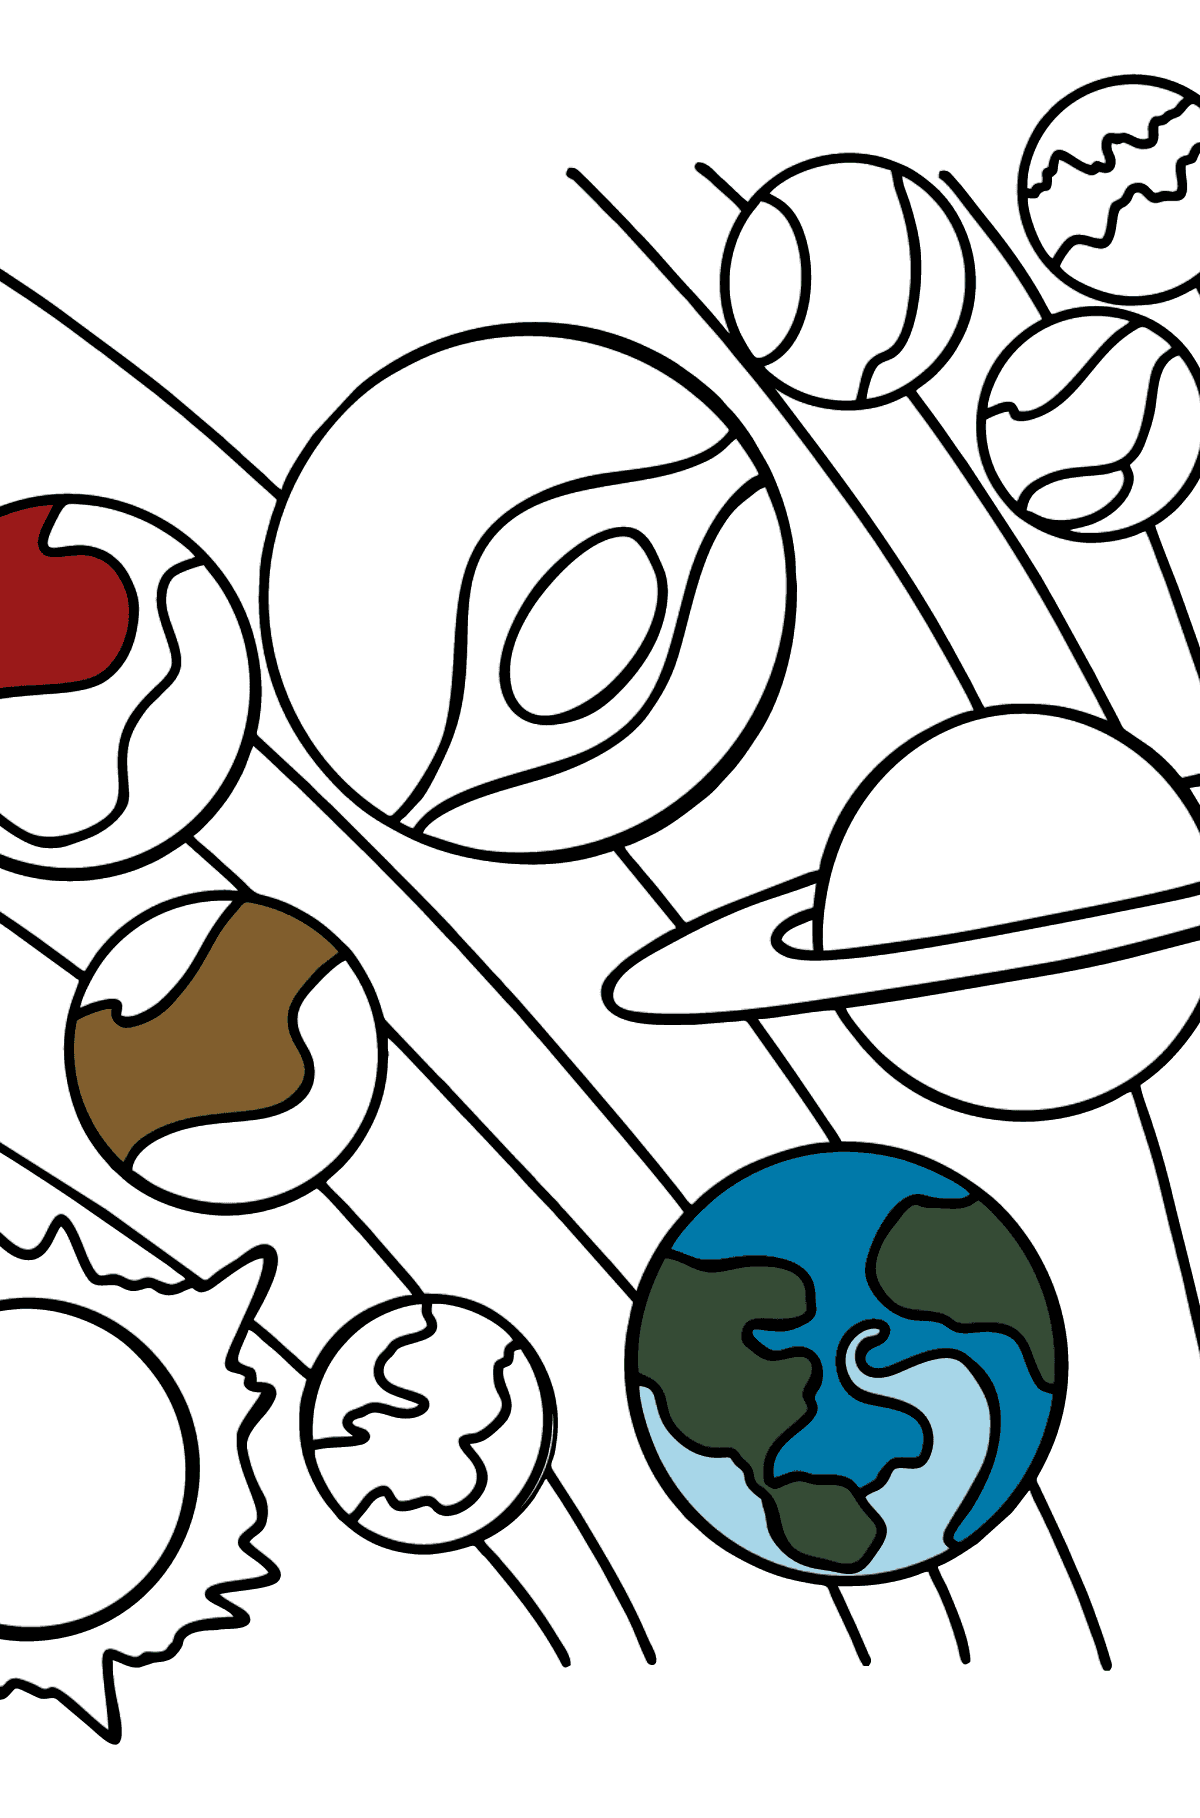 Página para colorear del sistema solar para niños - Dibujos para Colorear para Niños